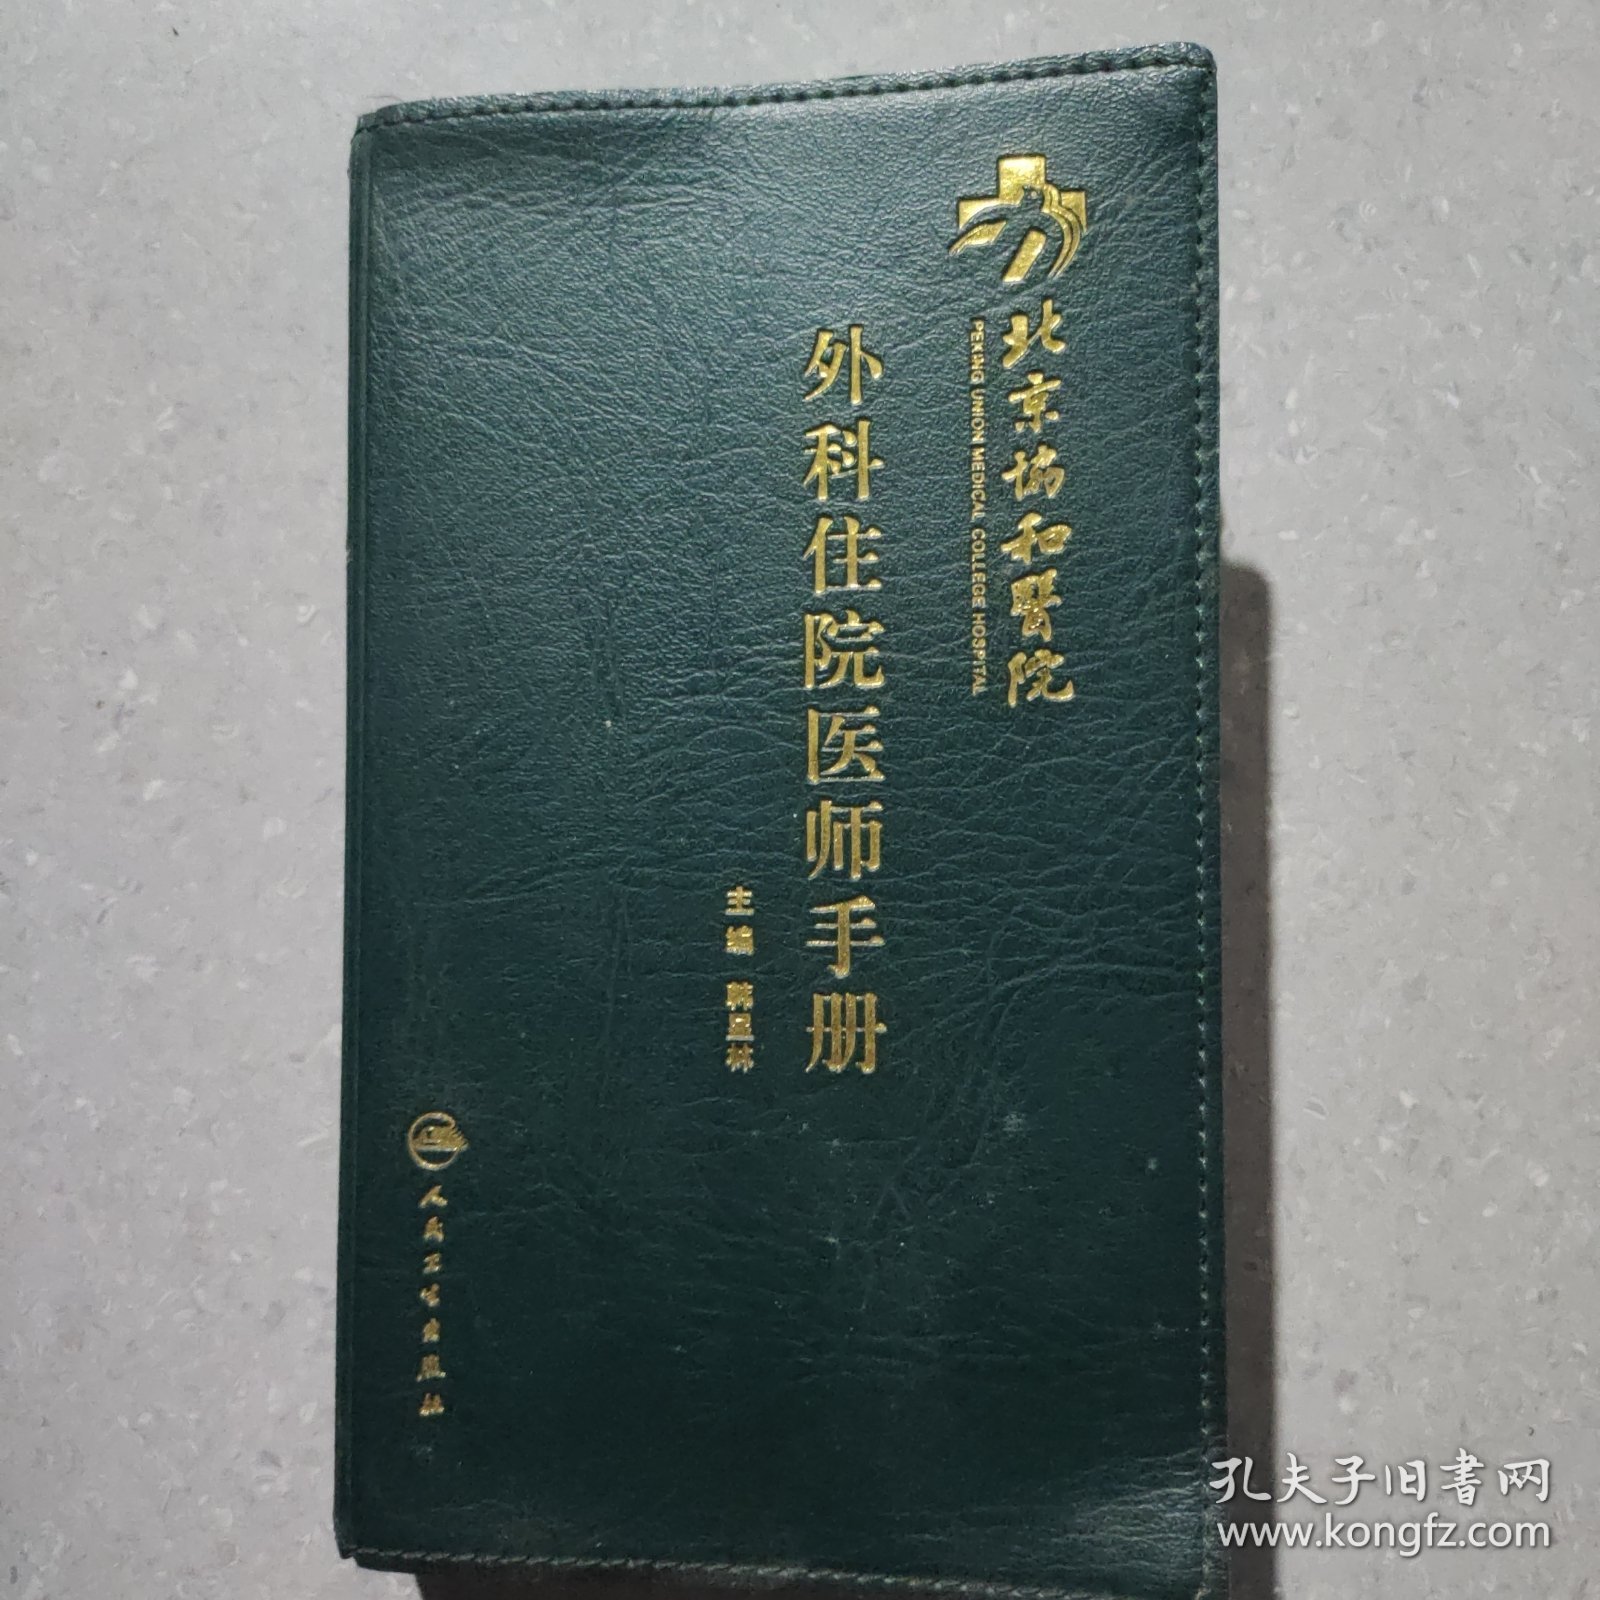 北京协和医院外科住院医师手册